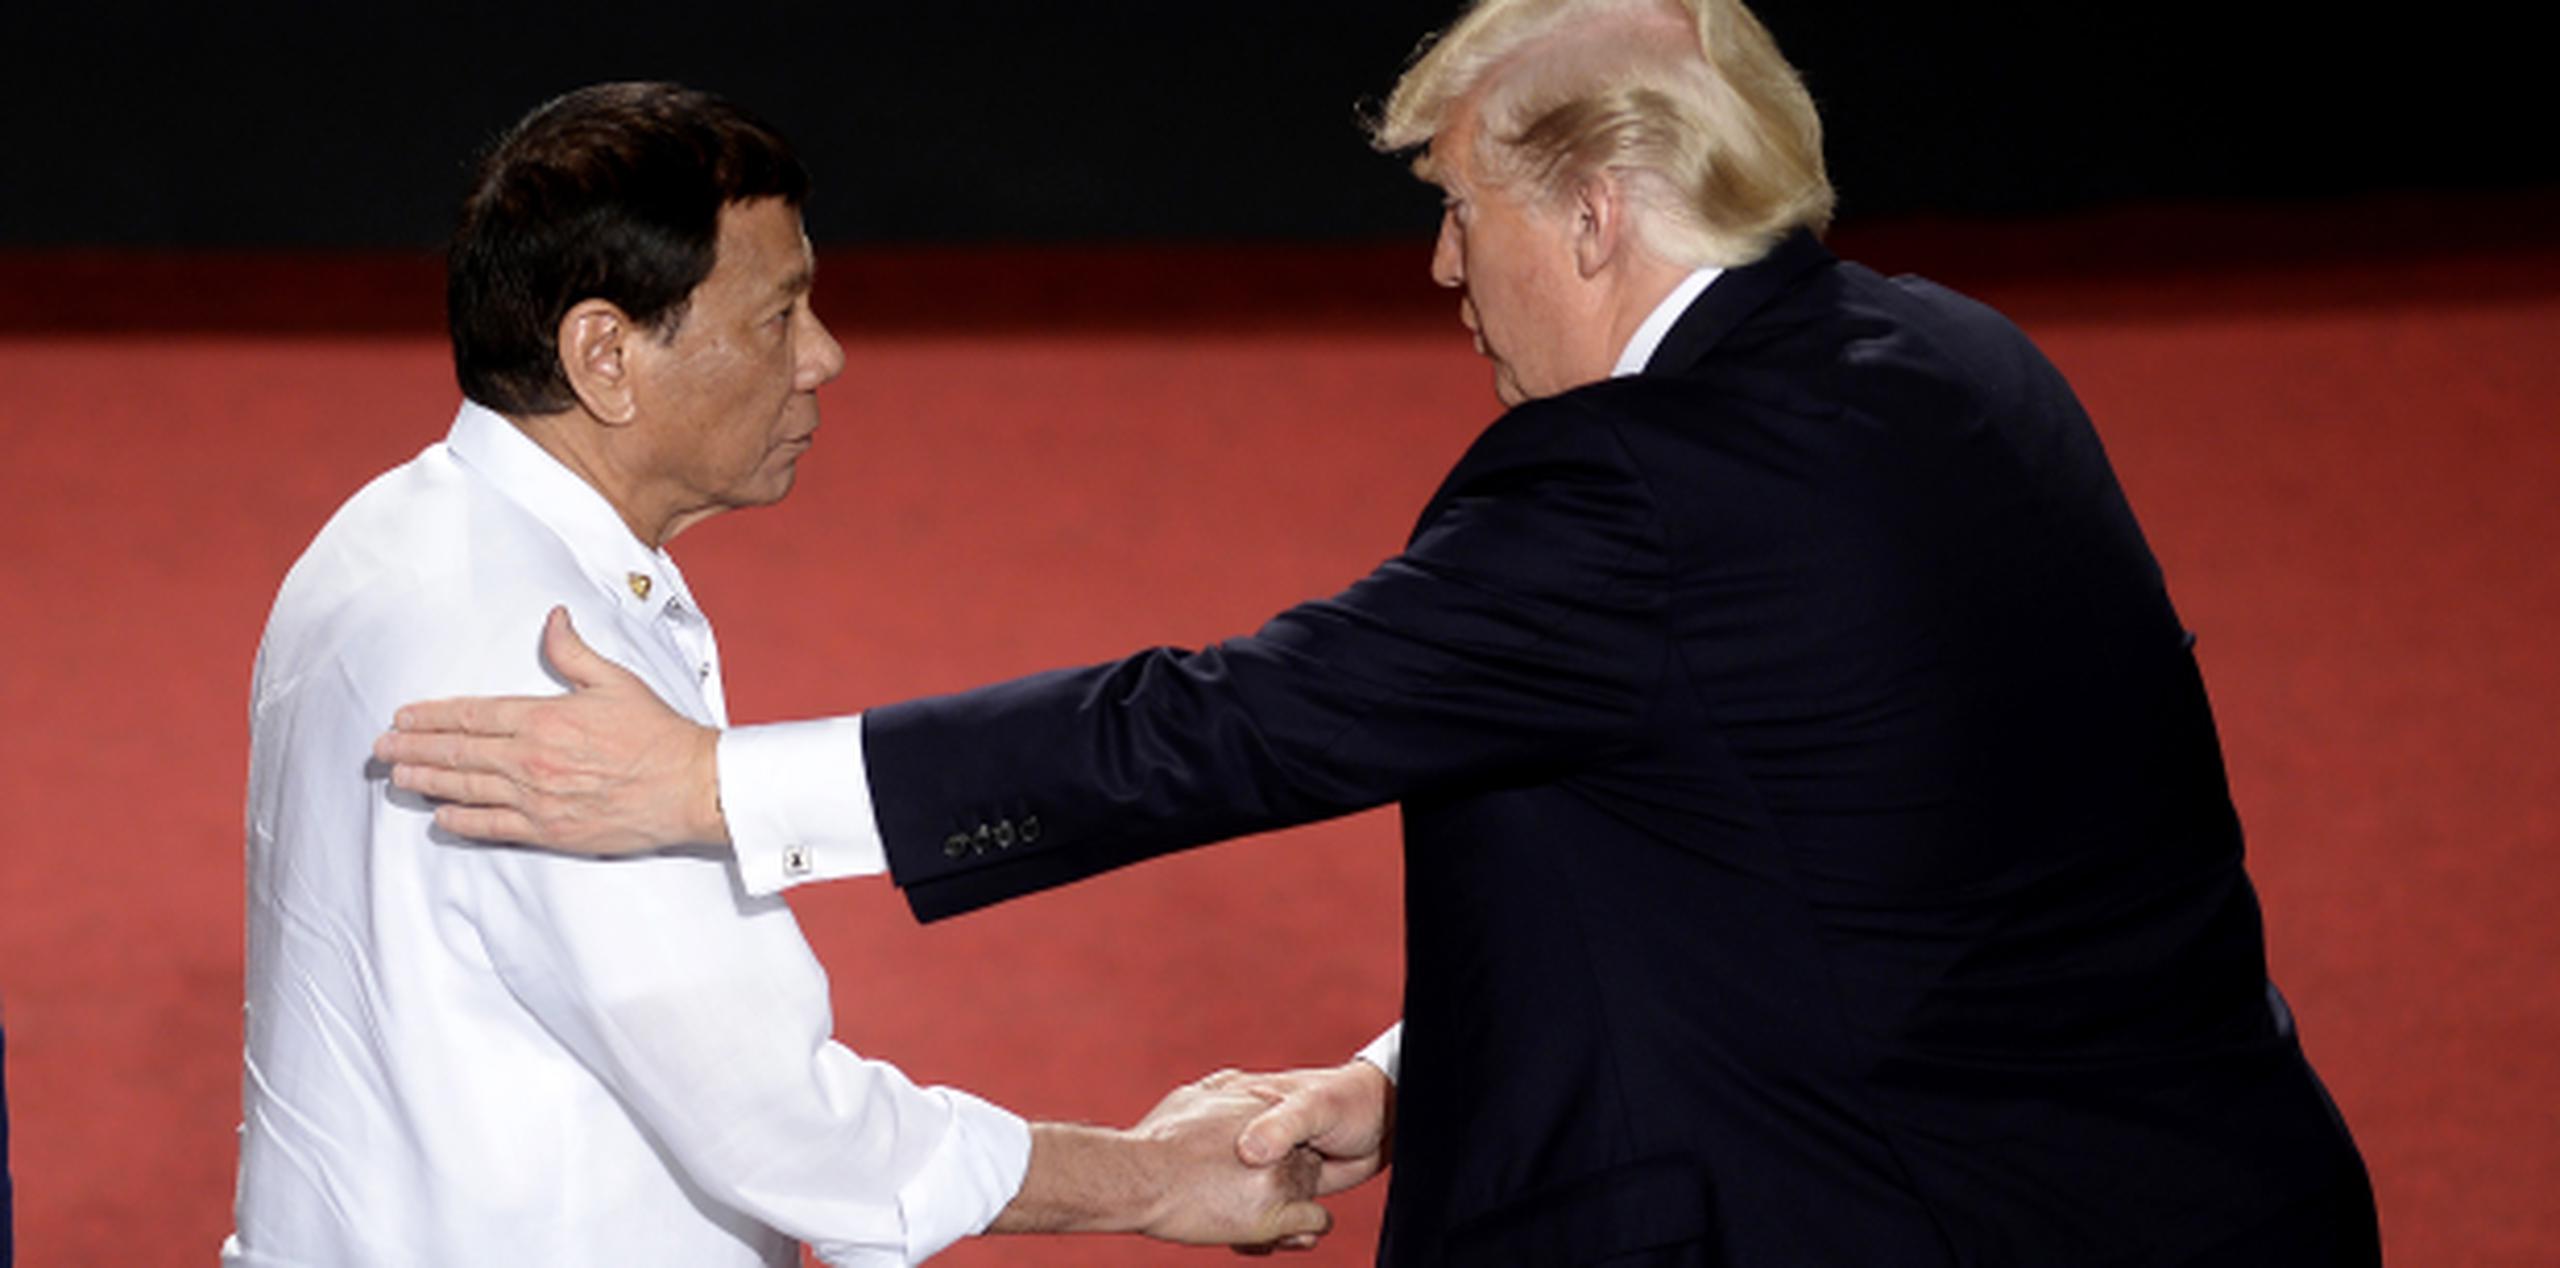 Duterte, aquí con un fuerte apretón de Trump, se ha jactado de haber matado a personas con sus propias manos. (AP)

